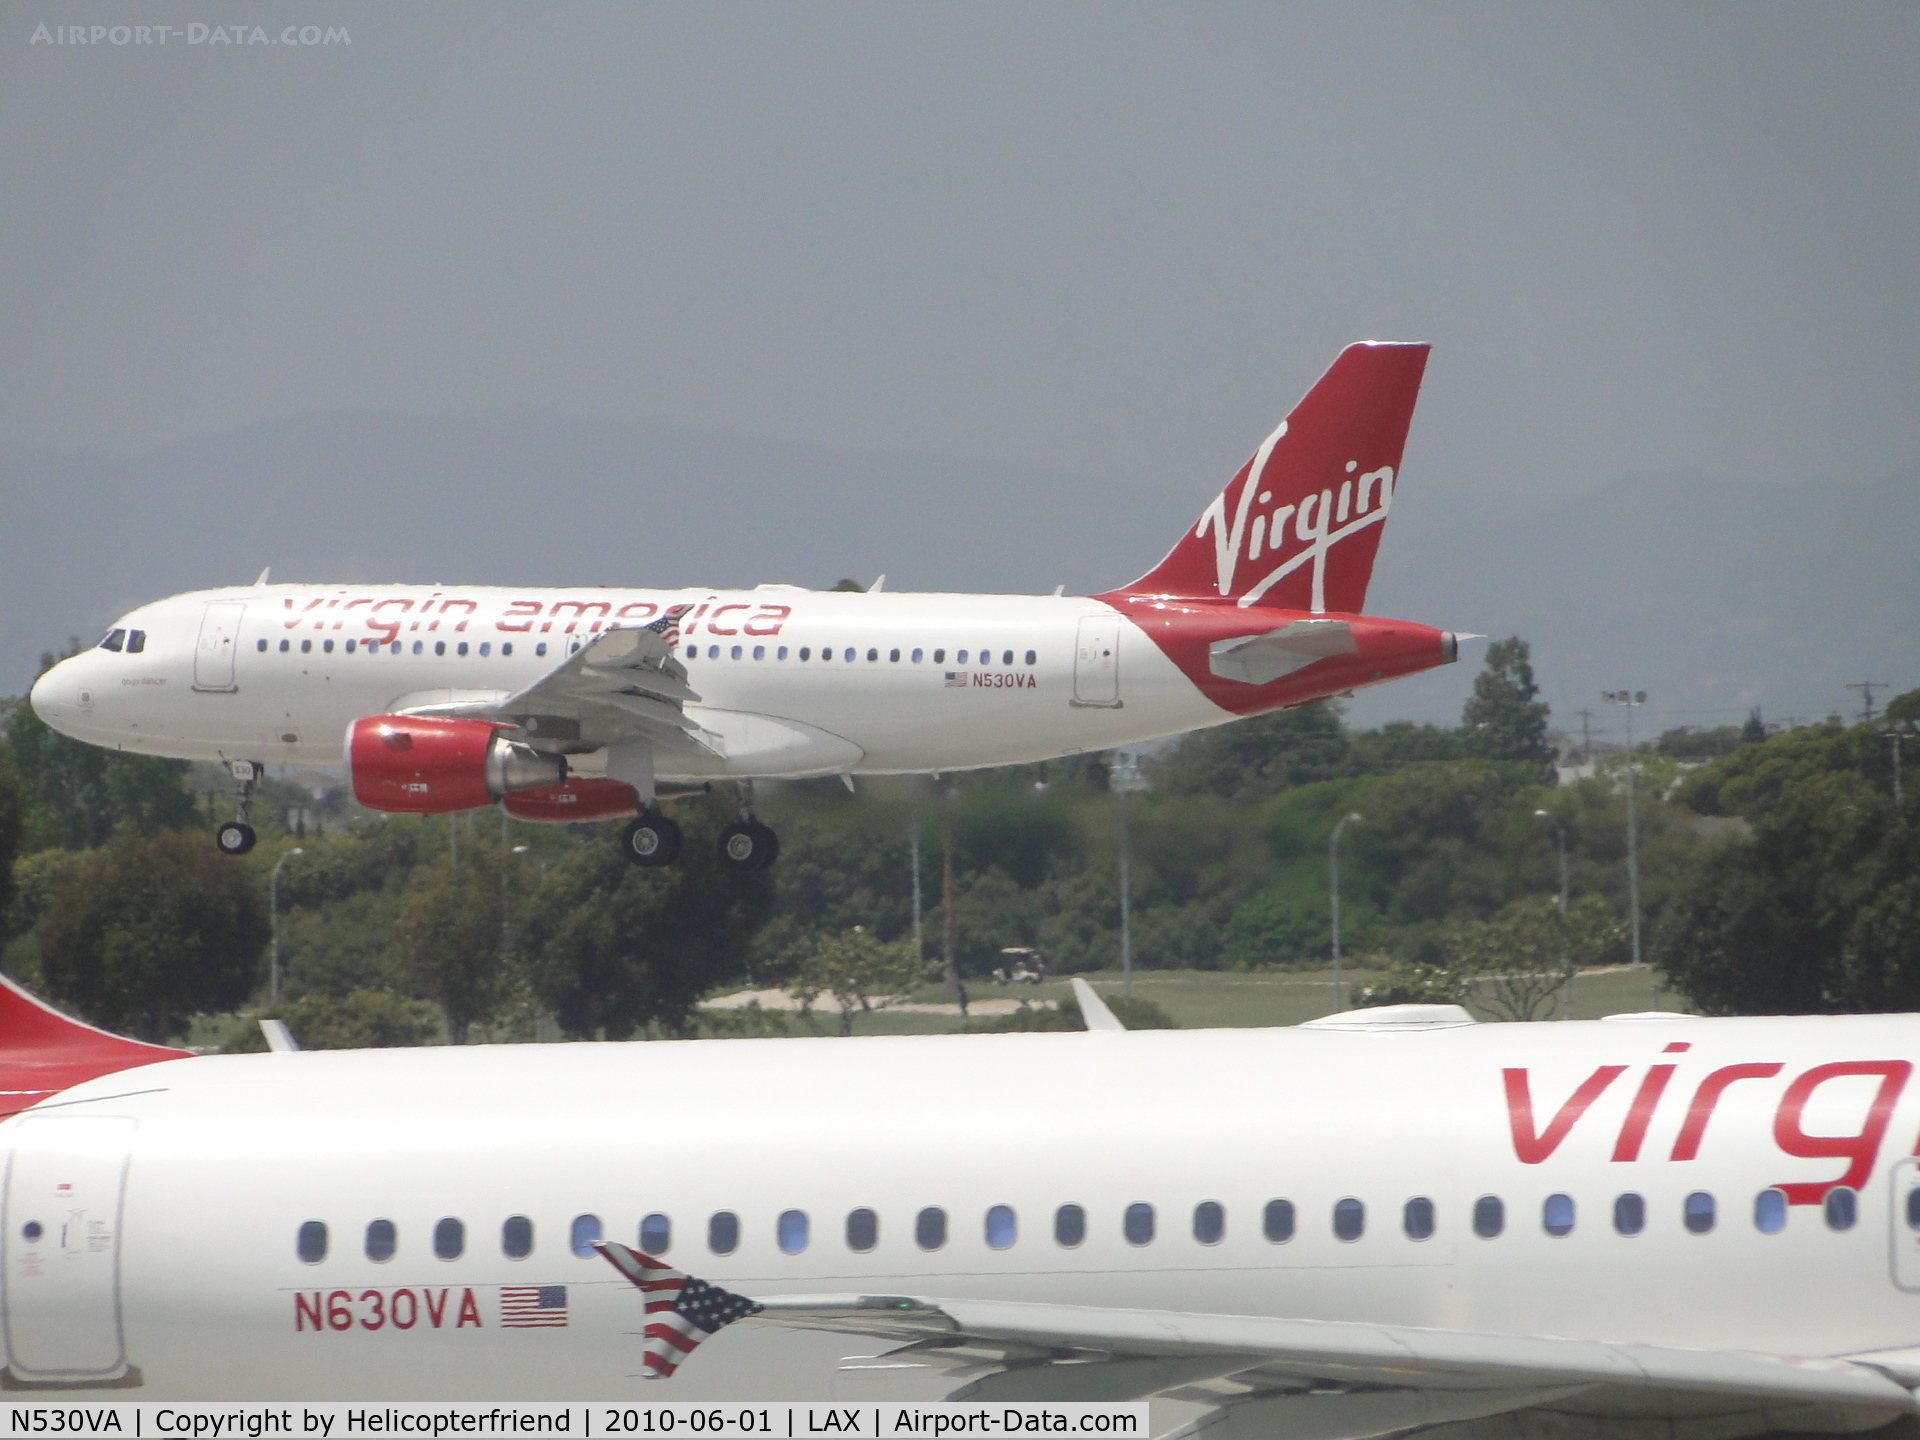 N530VA, 2008 Airbus A319-115 C/N 3686, N530VA landing on runway 24R while N630VA awaits to take off on runway 24L